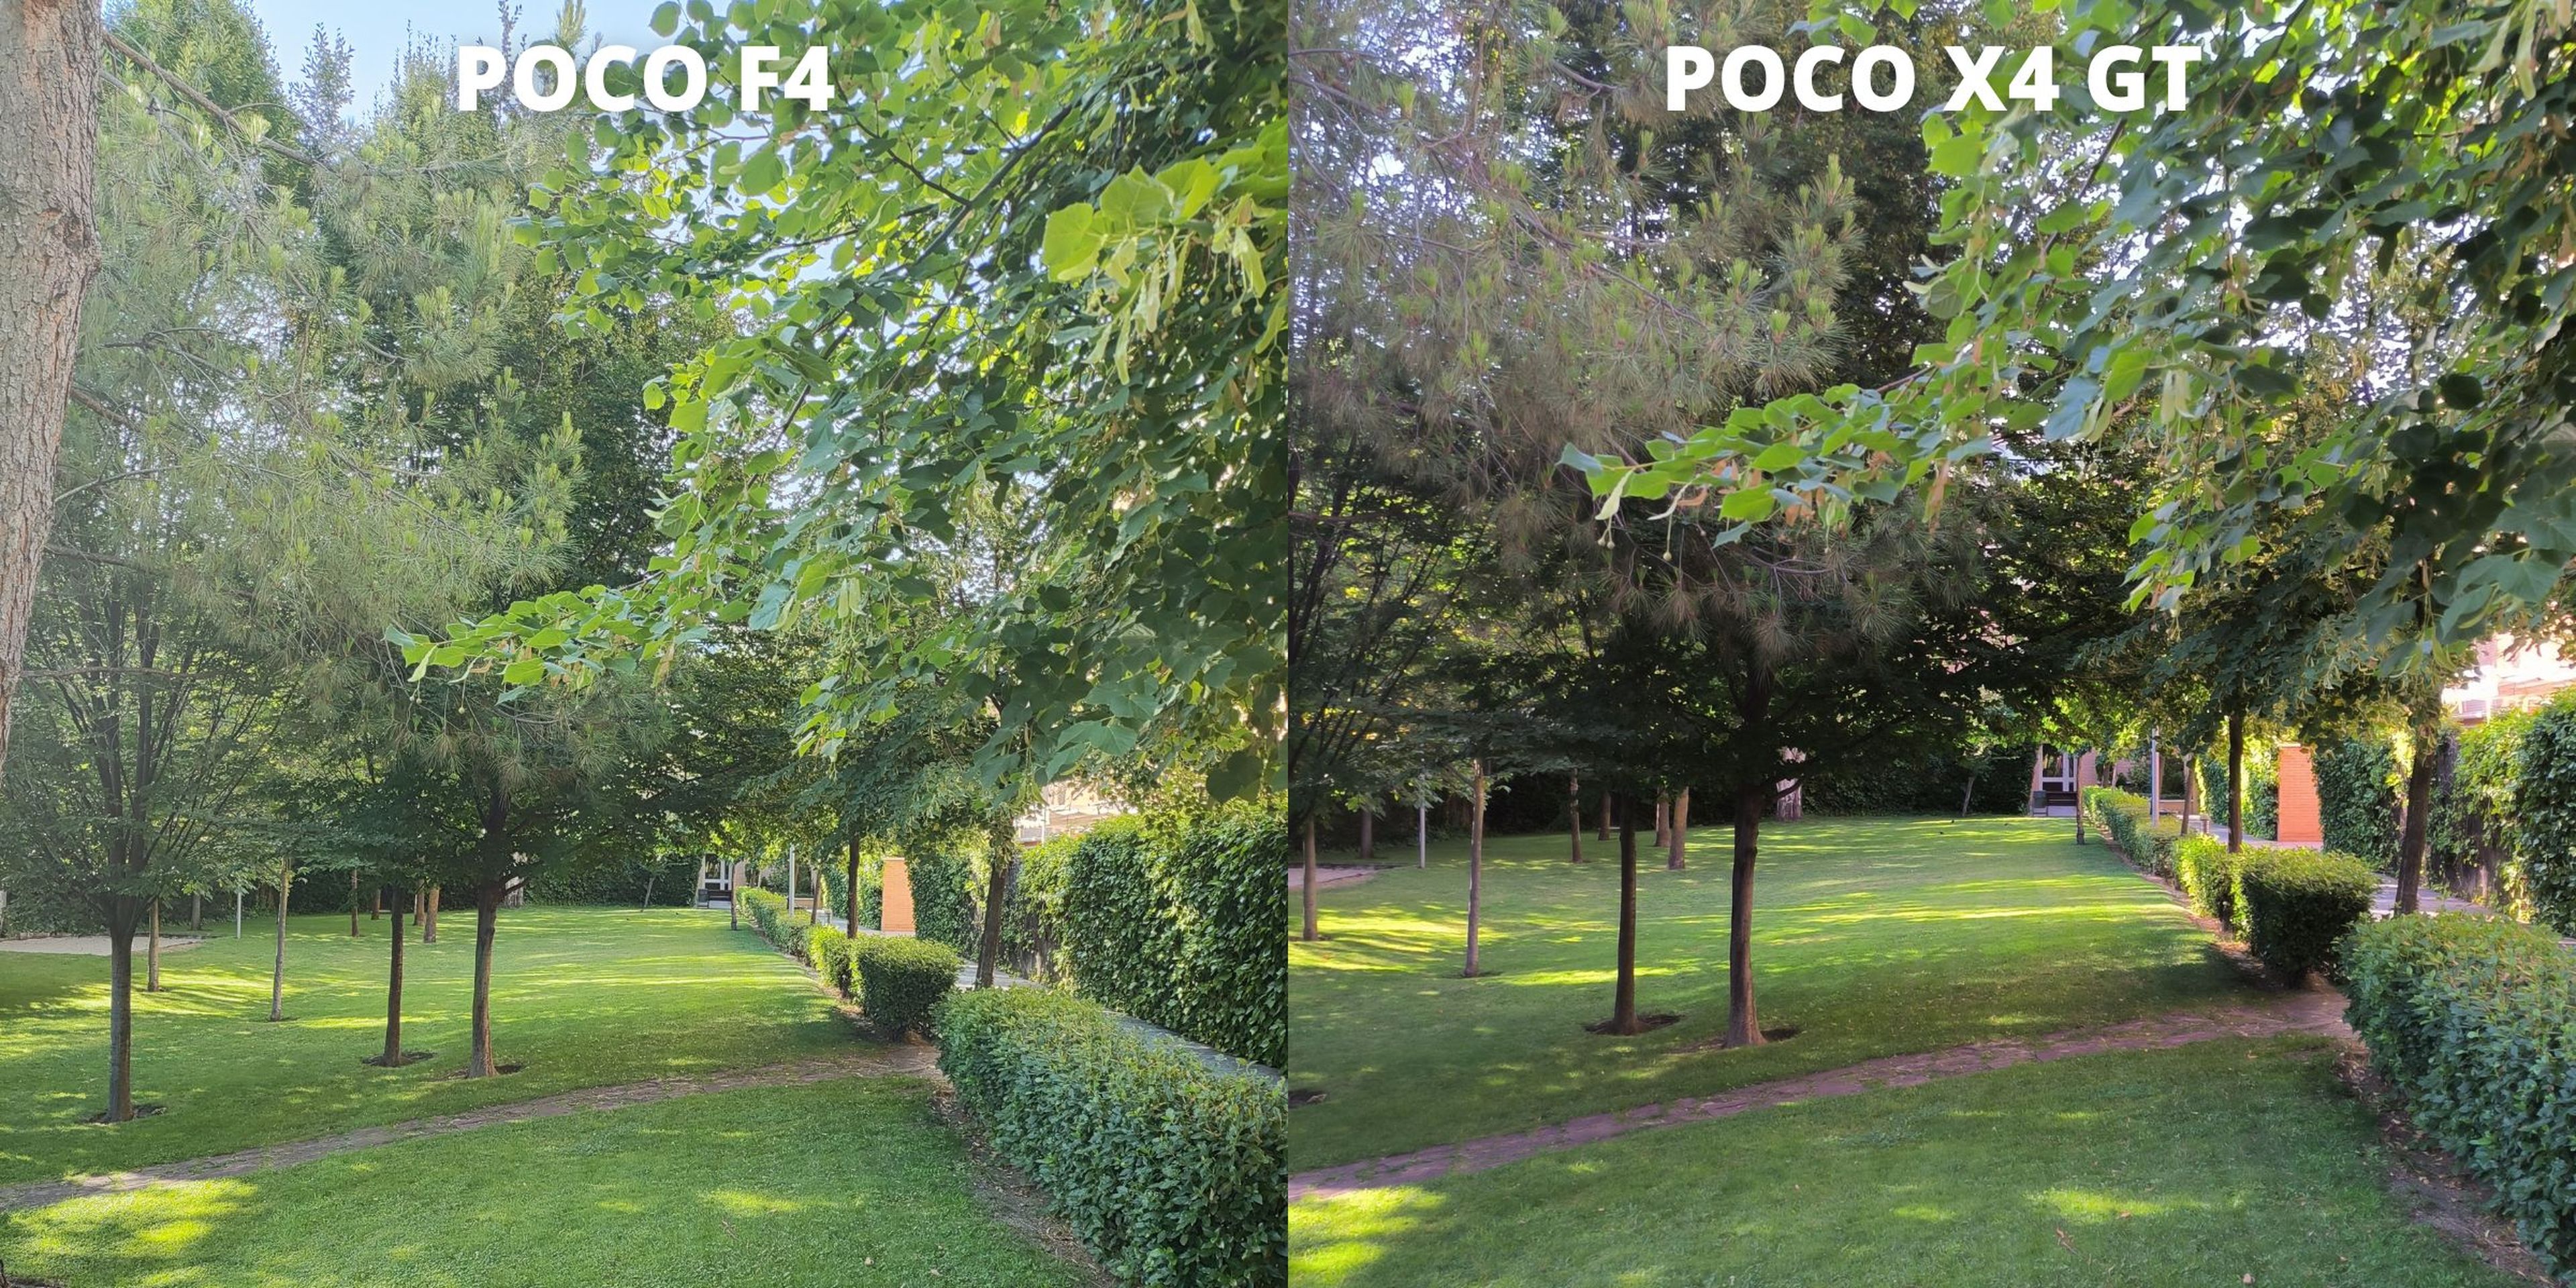 POCO F4 vs POCO X4 GT